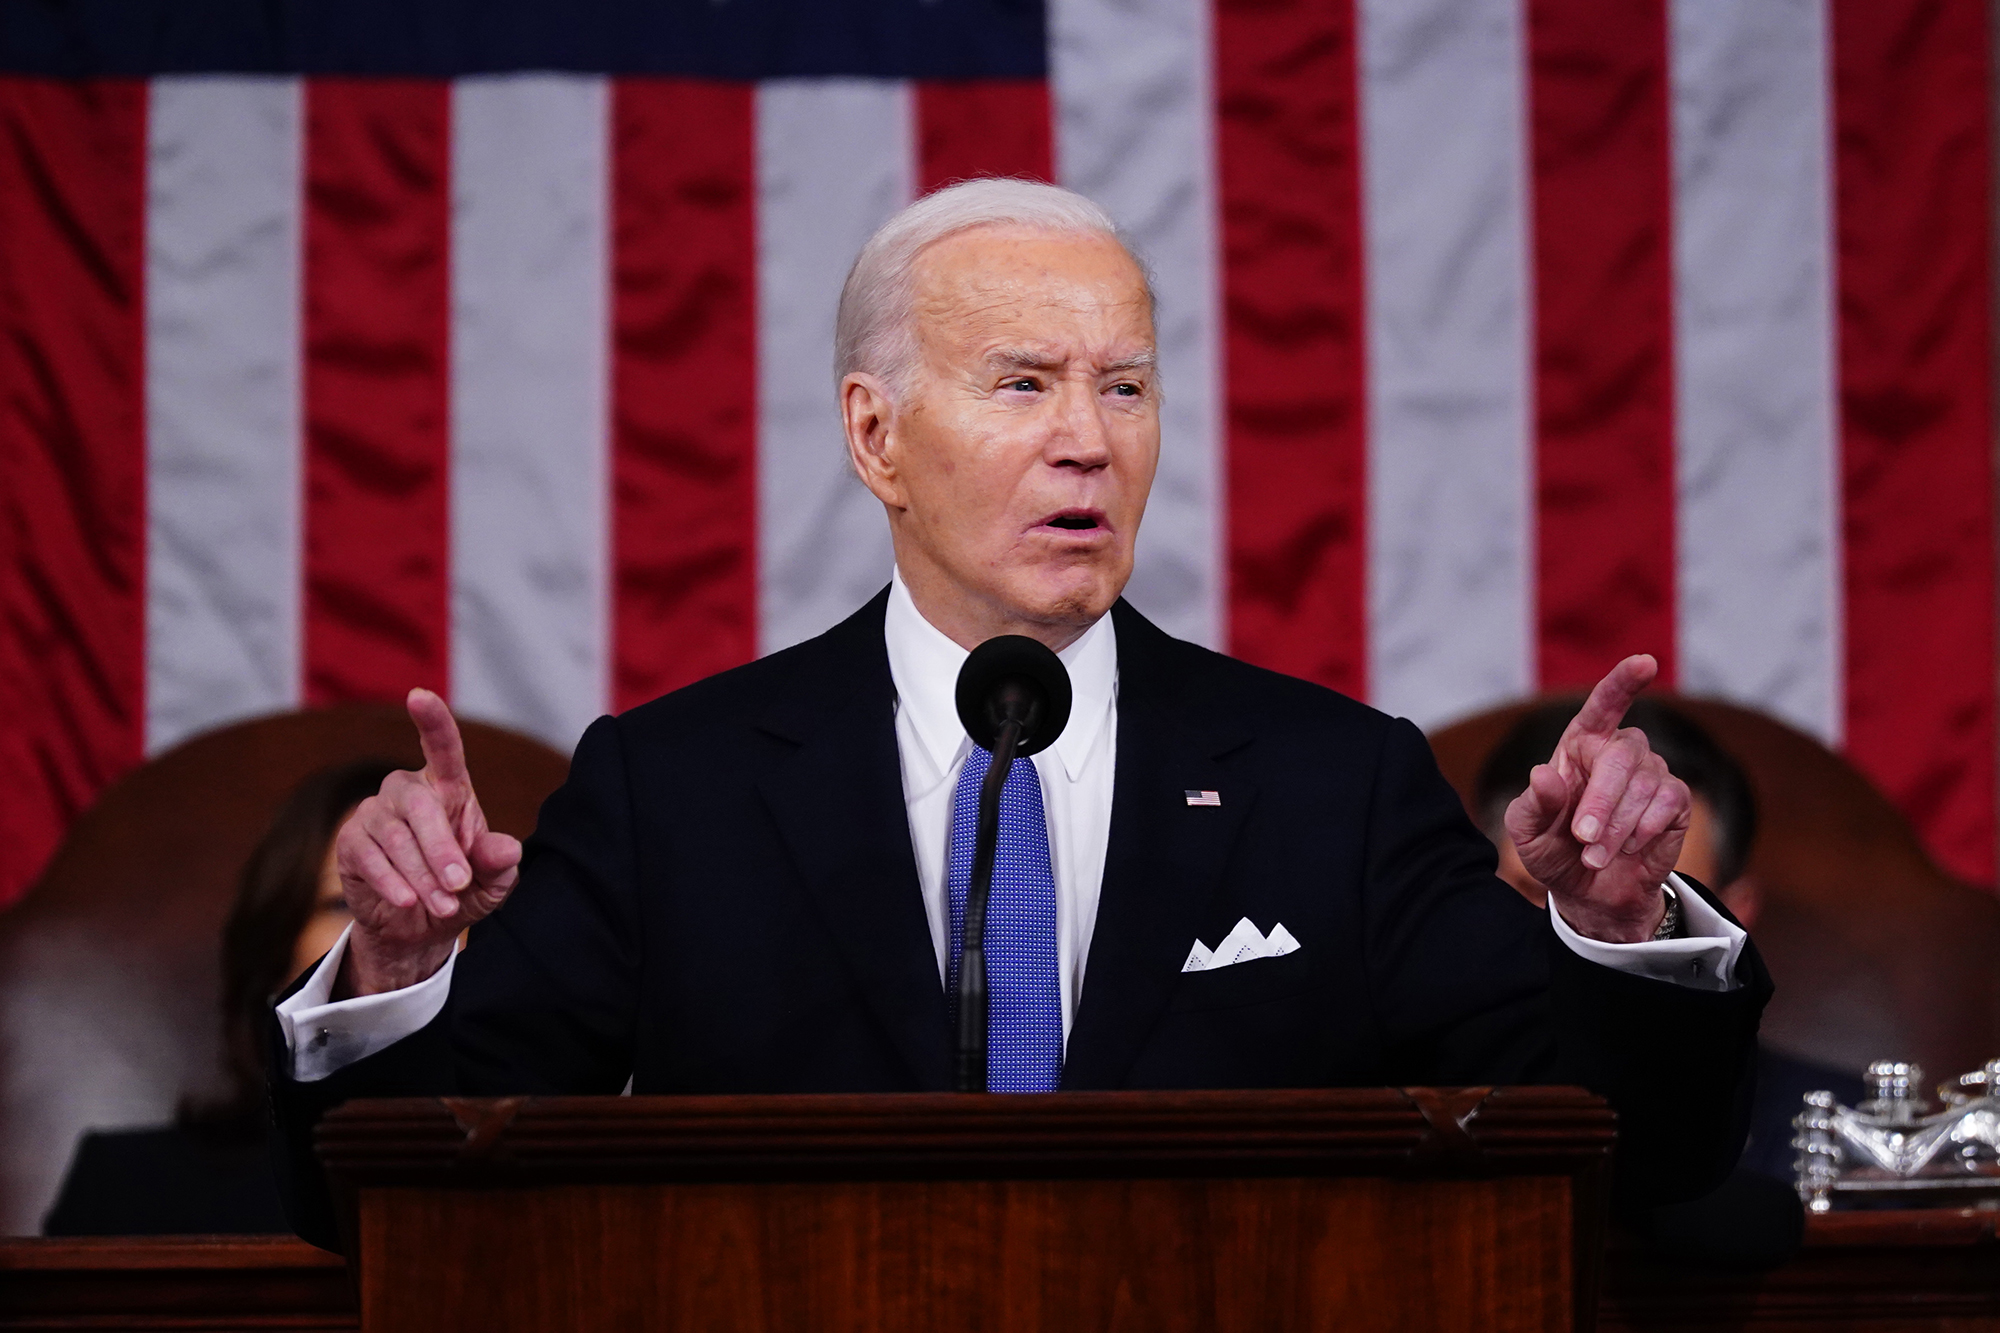 Joe Biden ฉายวิสัยทัศน์แห่งความเข้มแข็งและความเป็นผู้นำในการปราศรัยเรื่องสถานะของสหภาพ